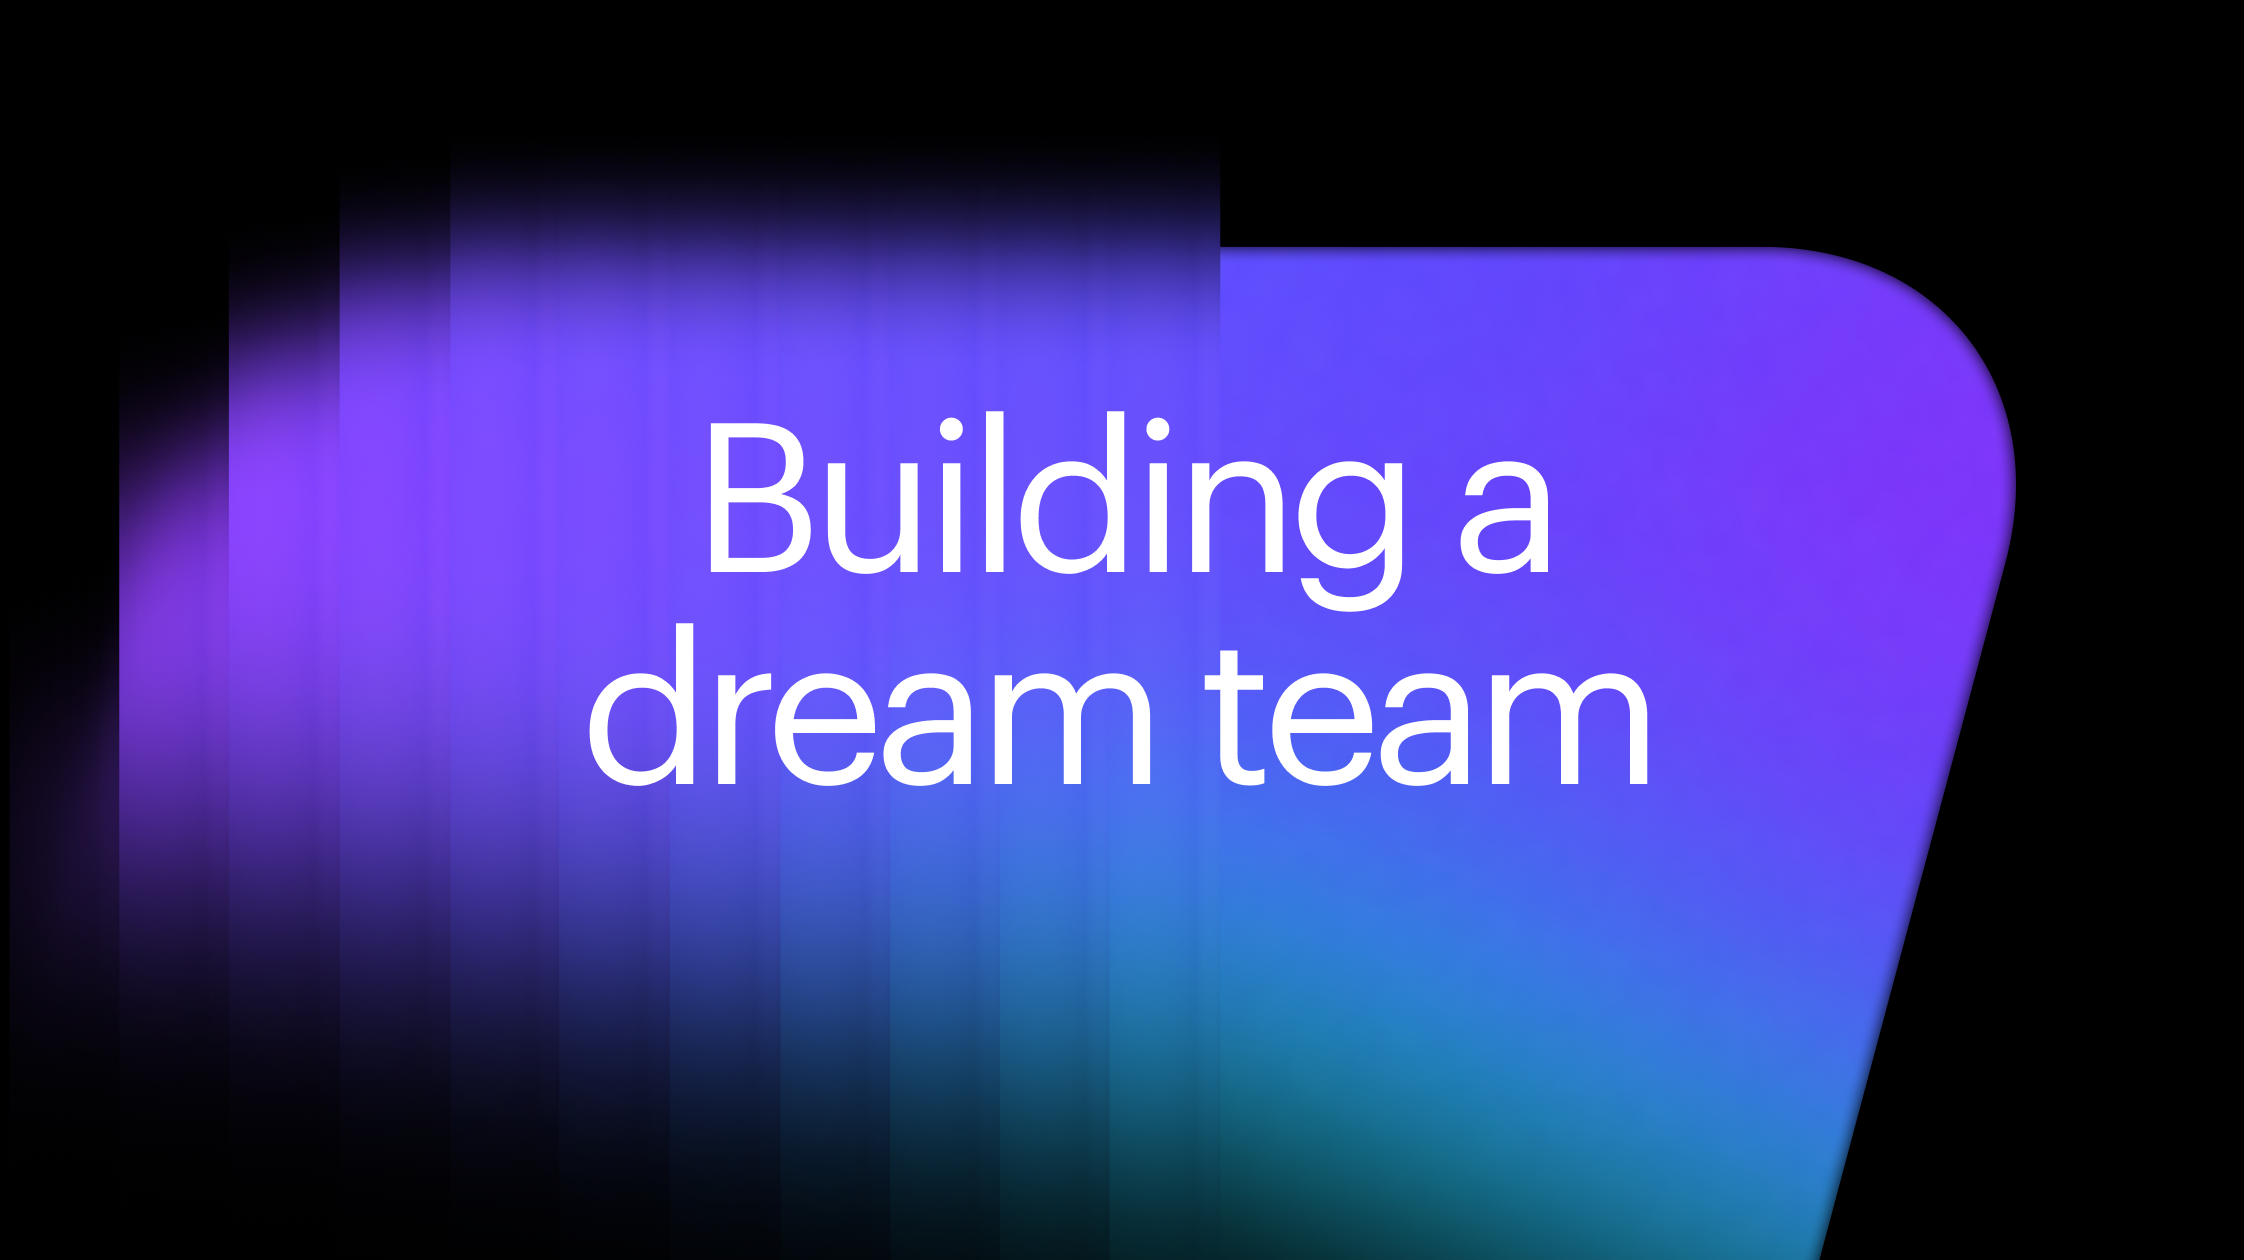 Building a dream team